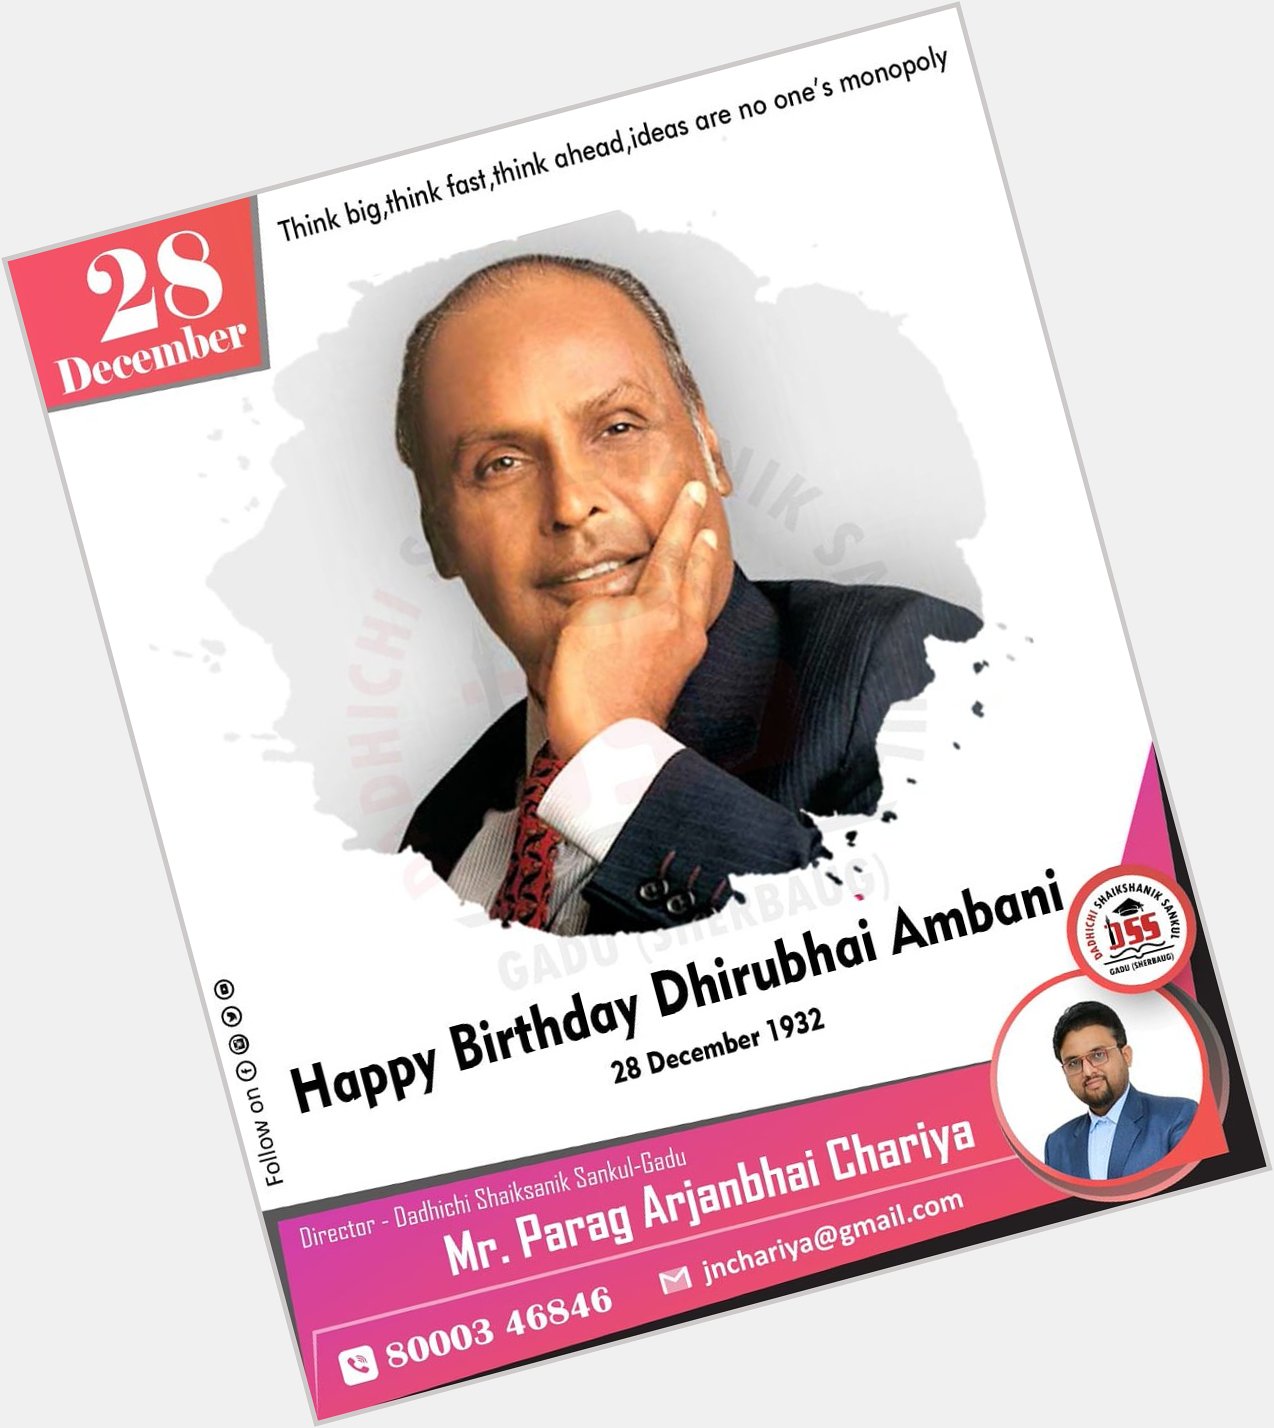 Dhirubhai Ambani
Happy Birthday 